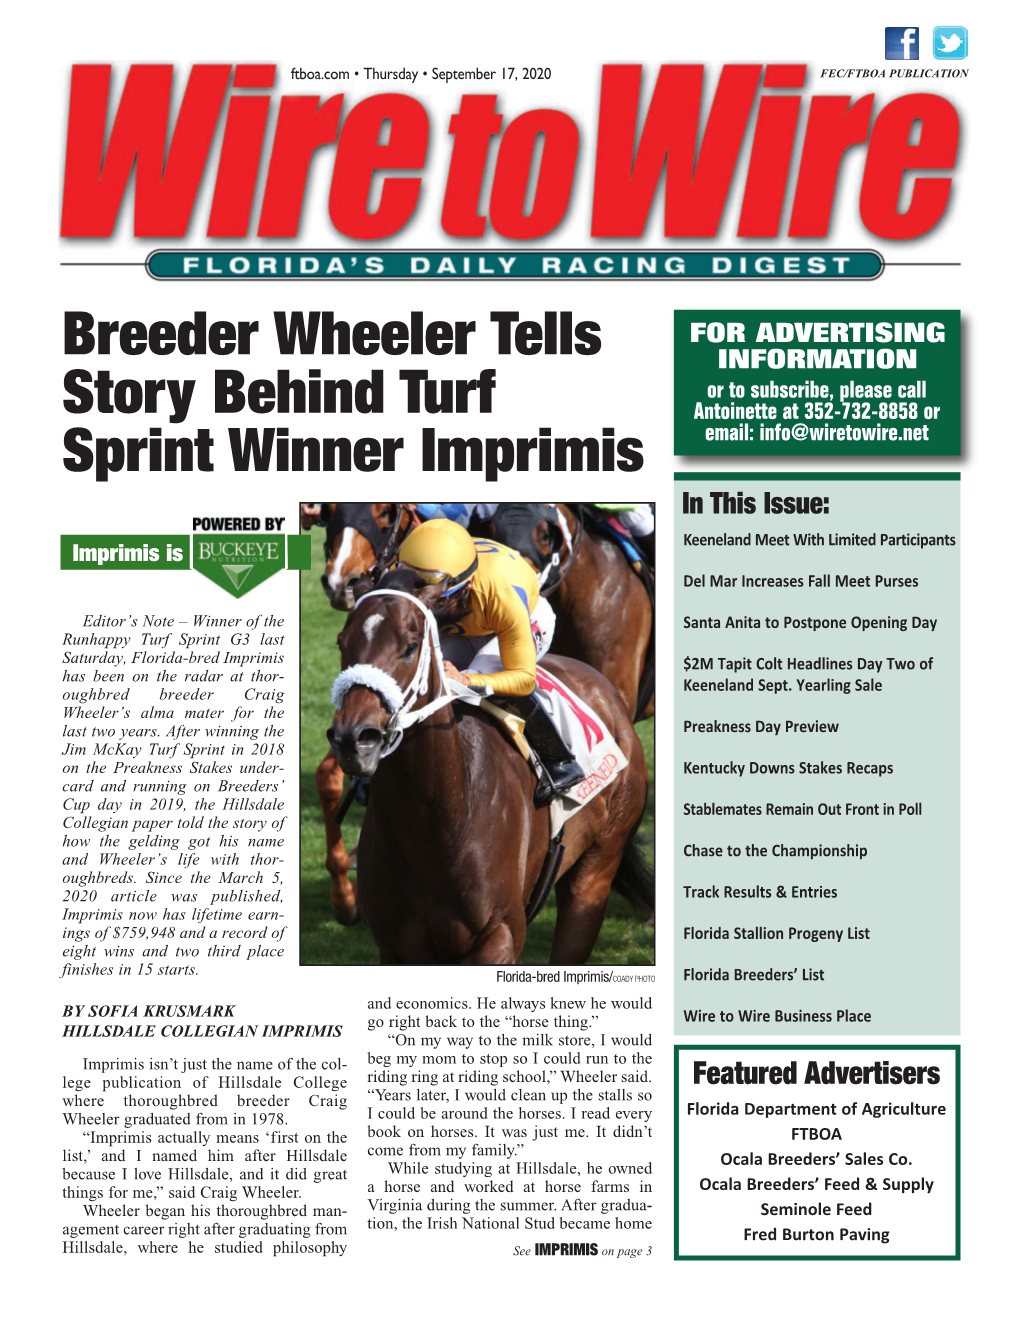 Breeder Wheeler Tells Story Behind Turf Sprint Winner Imprimis